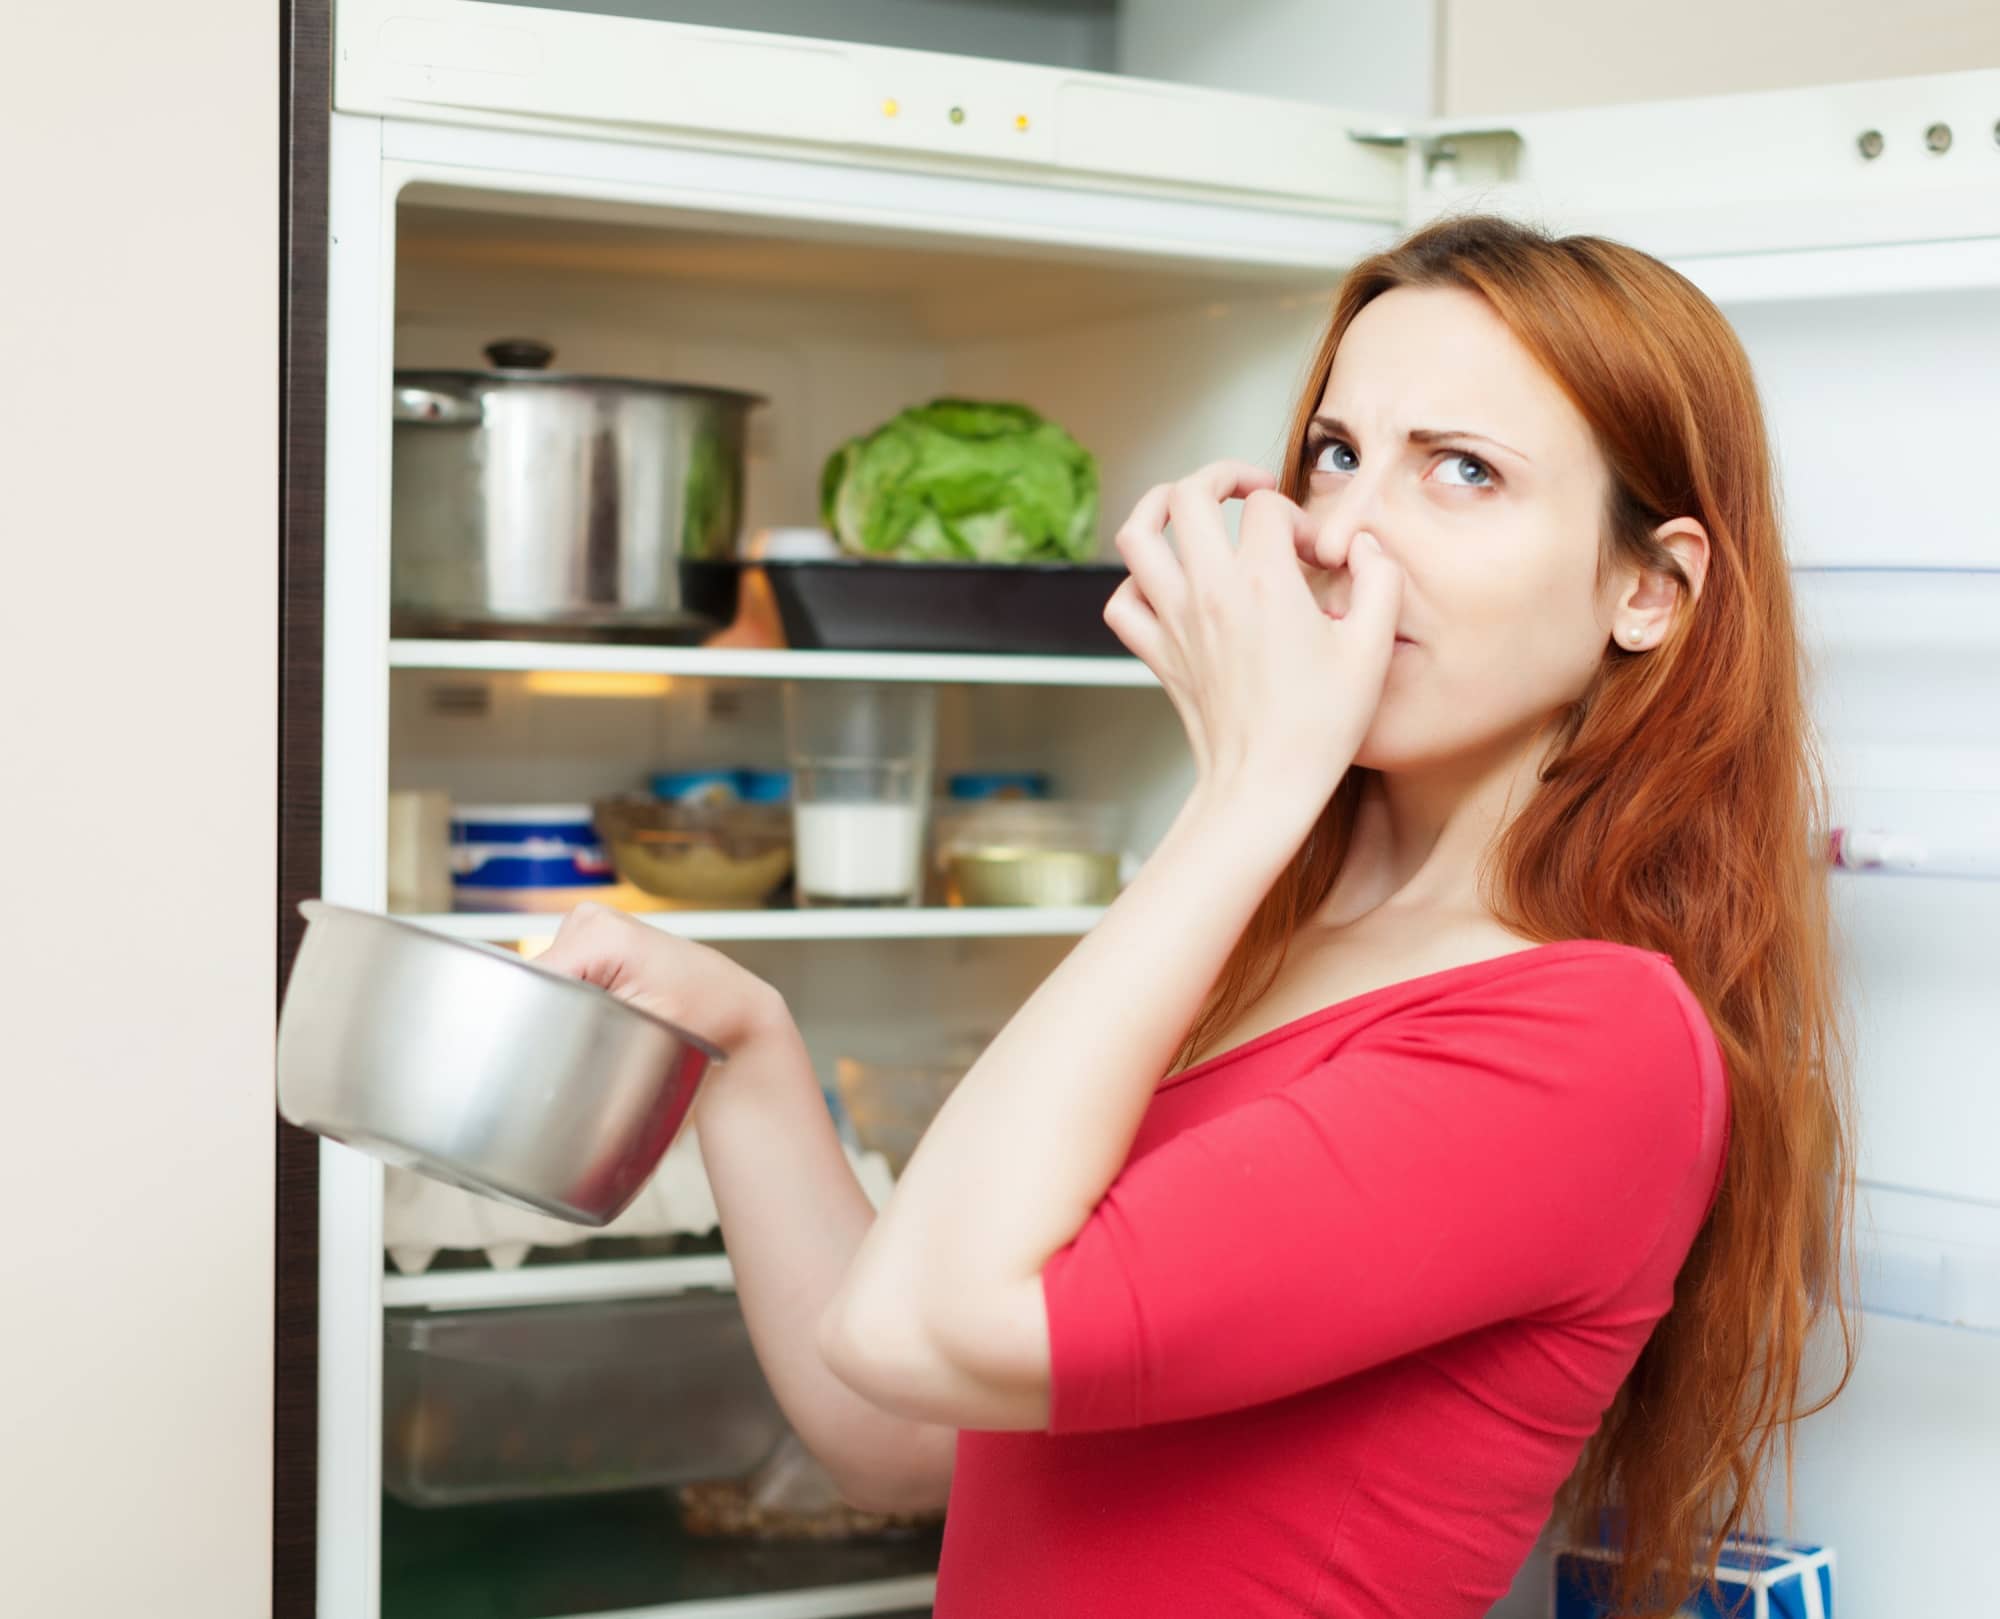 Неприятный чисто. Испорченная еда. Неприятный запах в холодильнике. Испорченные продукты в холодильнике. Неприятный запах из холодильника.